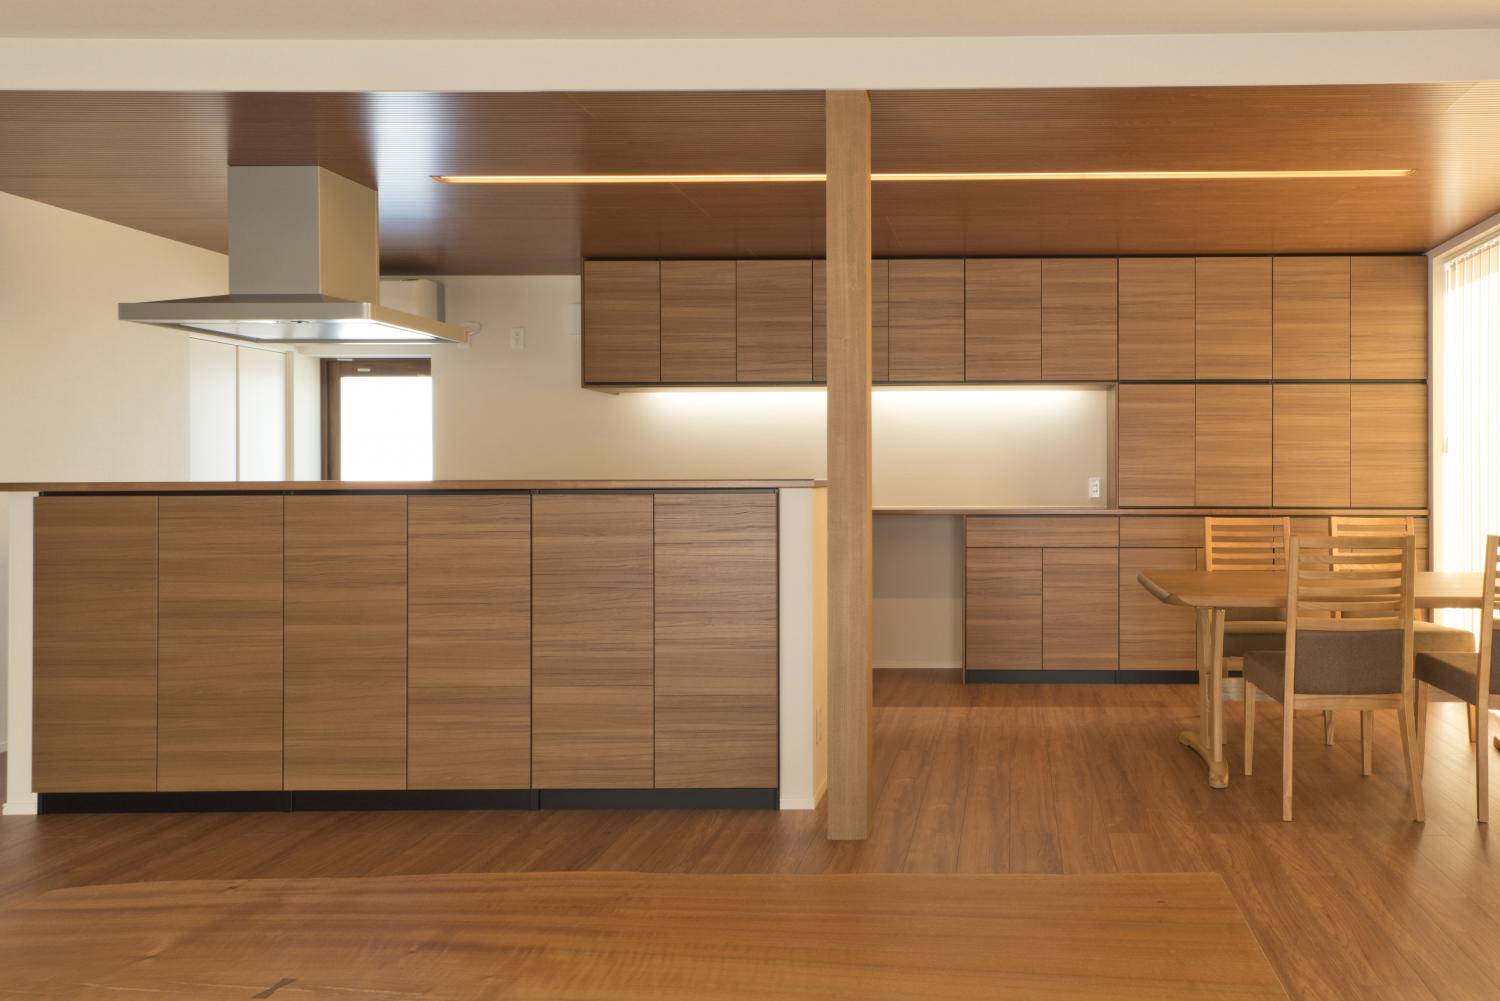 対面式キッチンをオススメする理由と人気のキッチン事例 住宅あるある 富山の注文住宅 セキホーム